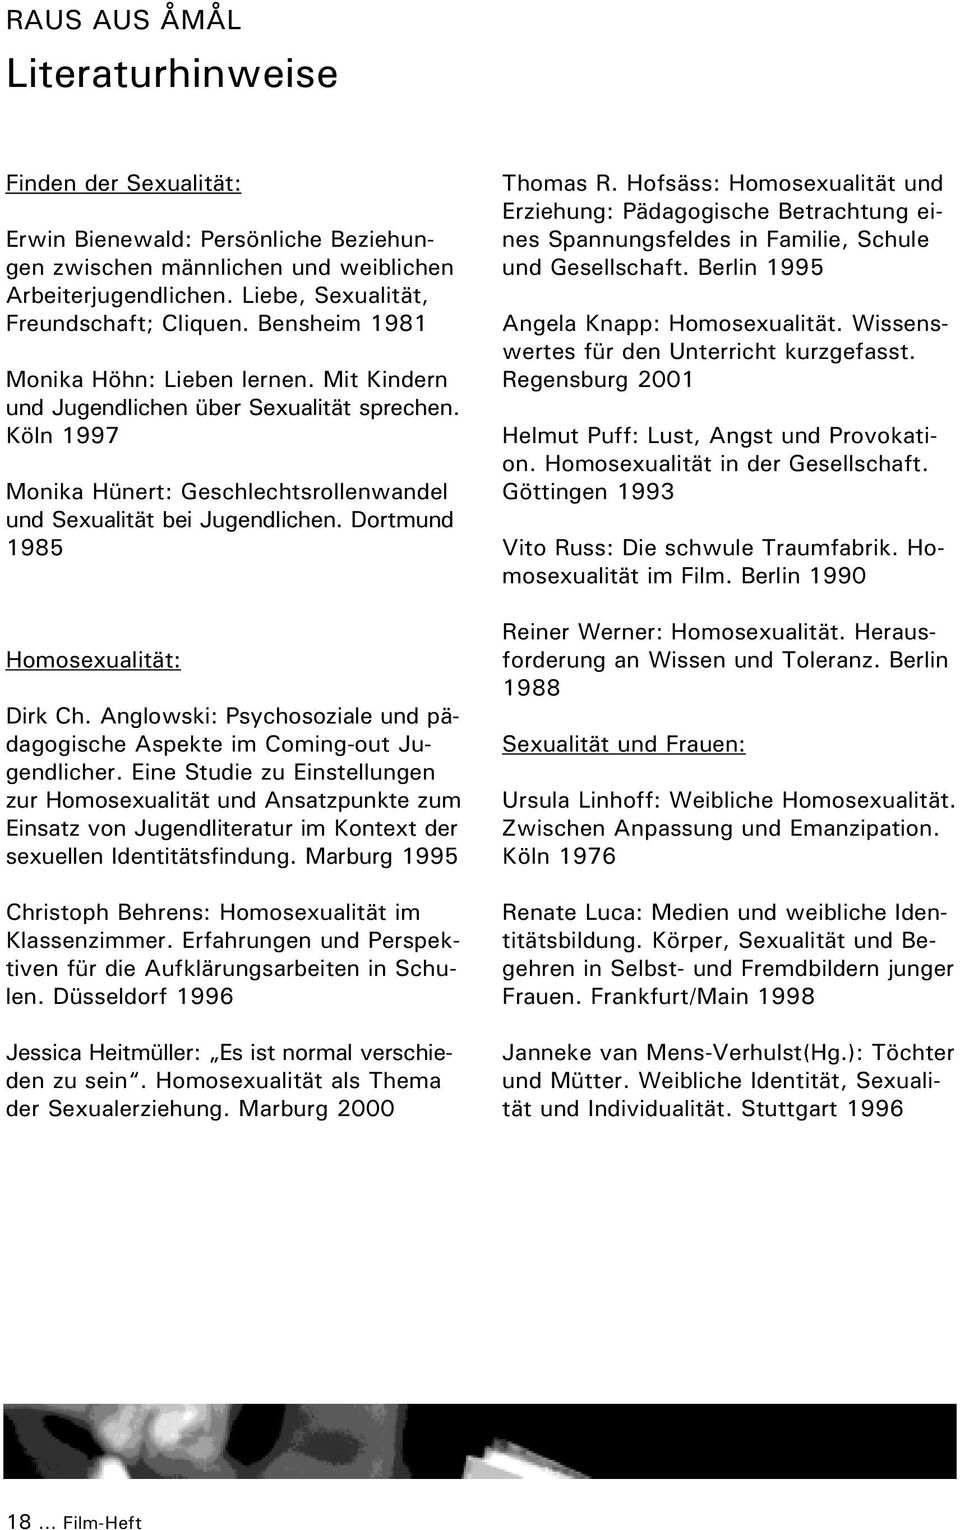 Dortmund 1985 Homosexualität: Dirk Ch. Anglowski: Psychosoziale und pädagogische Aspekte im Coming-out Jugendlicher.